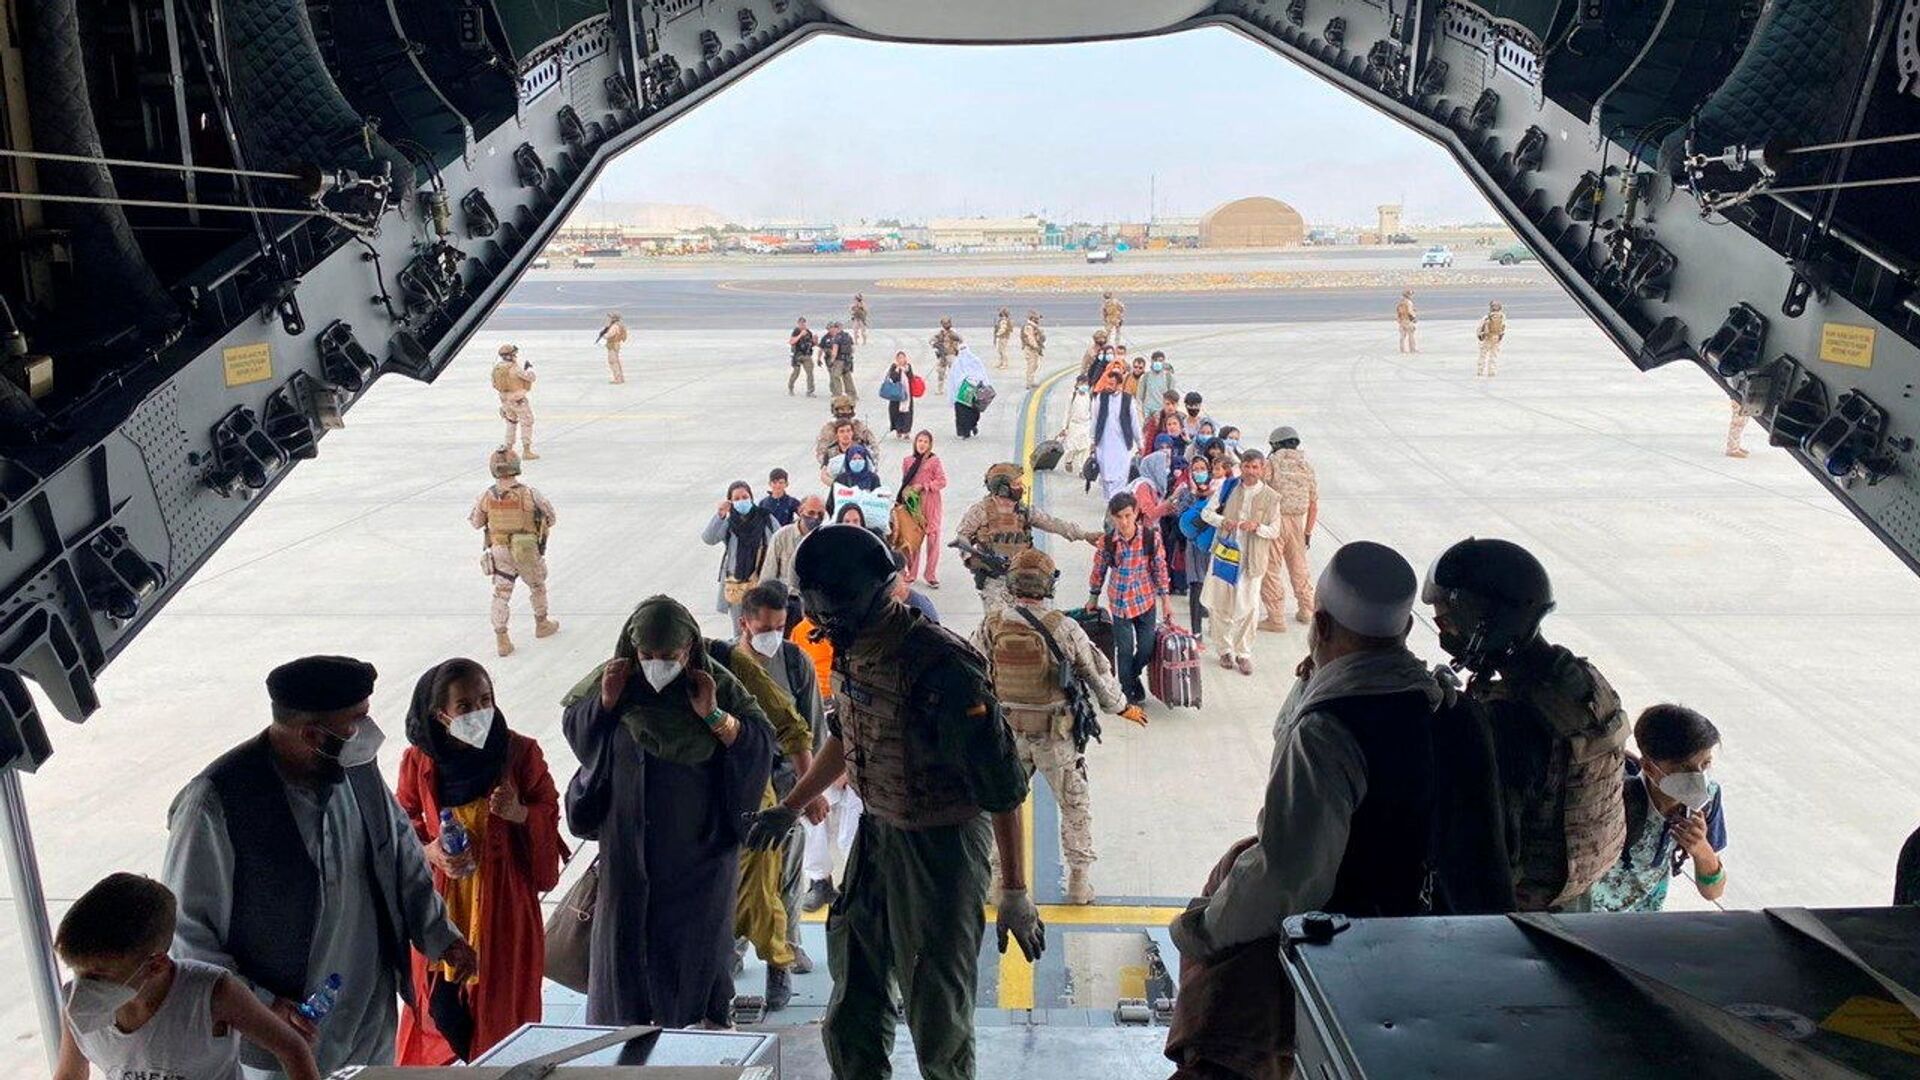 Граждане Испании и афганцы садятся в военный самолет в рамках эвакуации в международном аэропорту Хамида Карзая в Кабуле - Sputnik Узбекистан, 1920, 22.08.2021